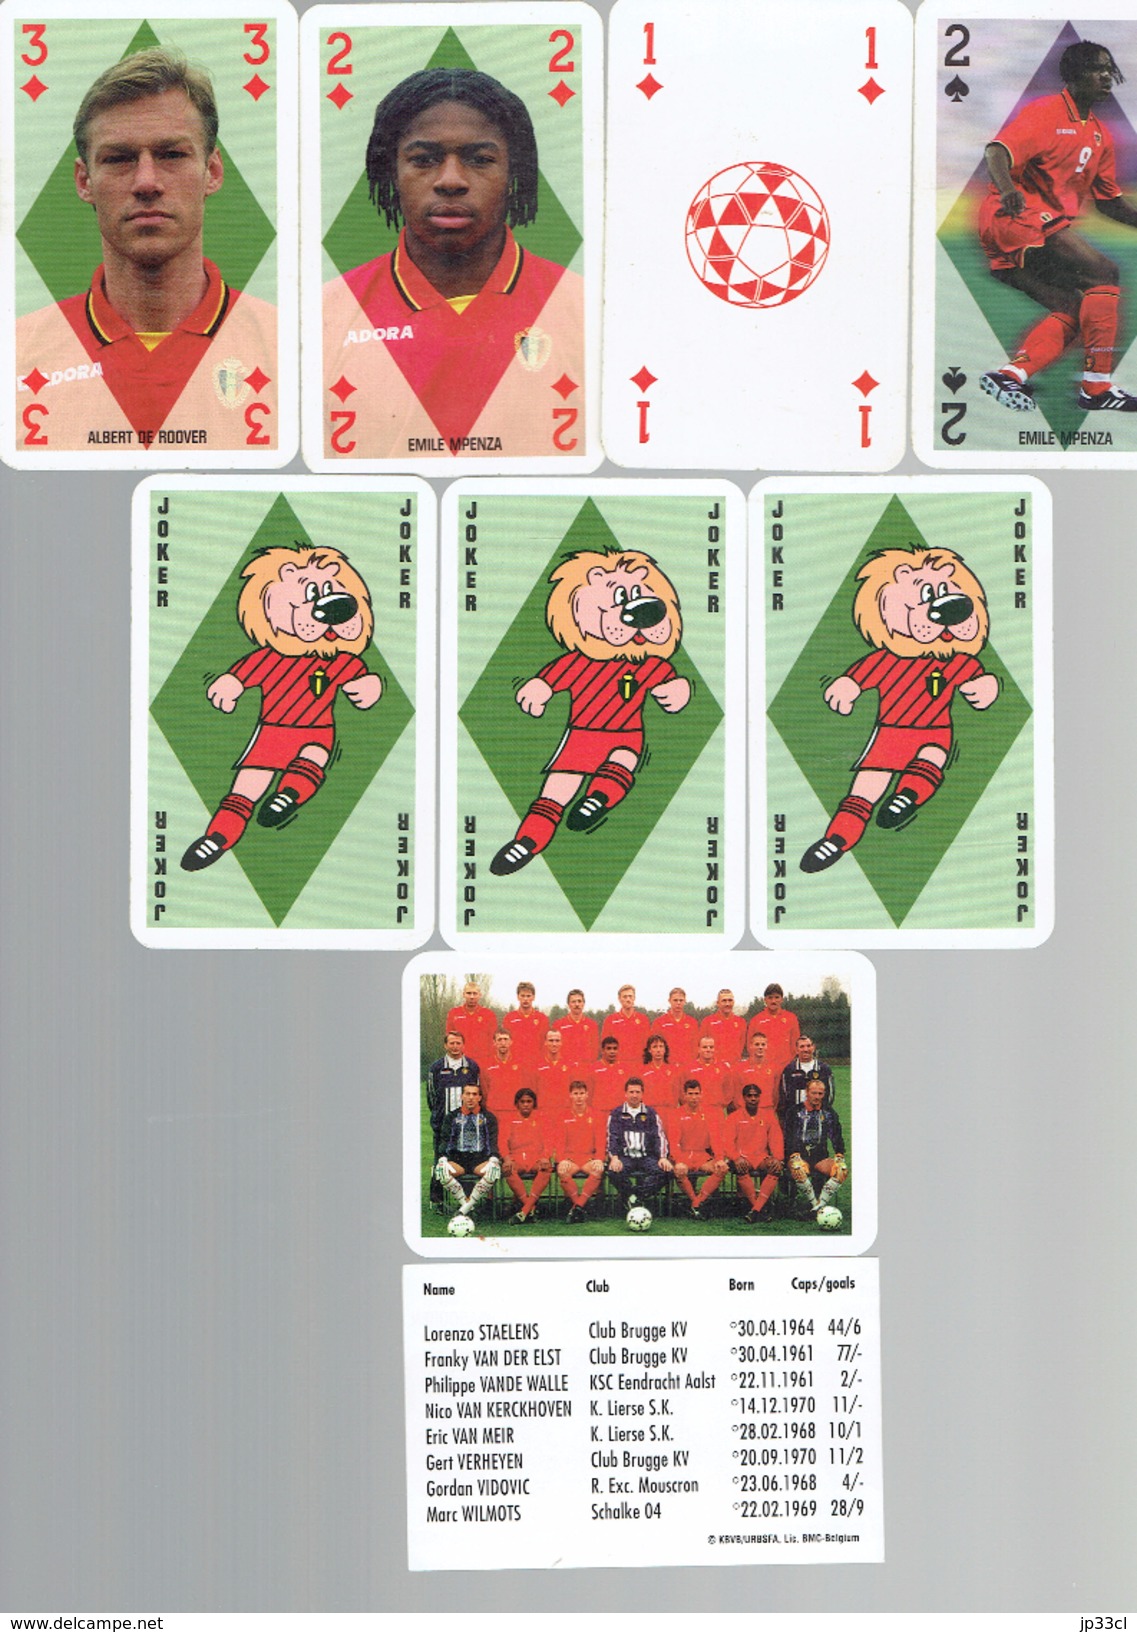 Jeu de cartes officiel des Diables Rouges Officieel Kaartspel Rode Duivels (vers 1995/2000)